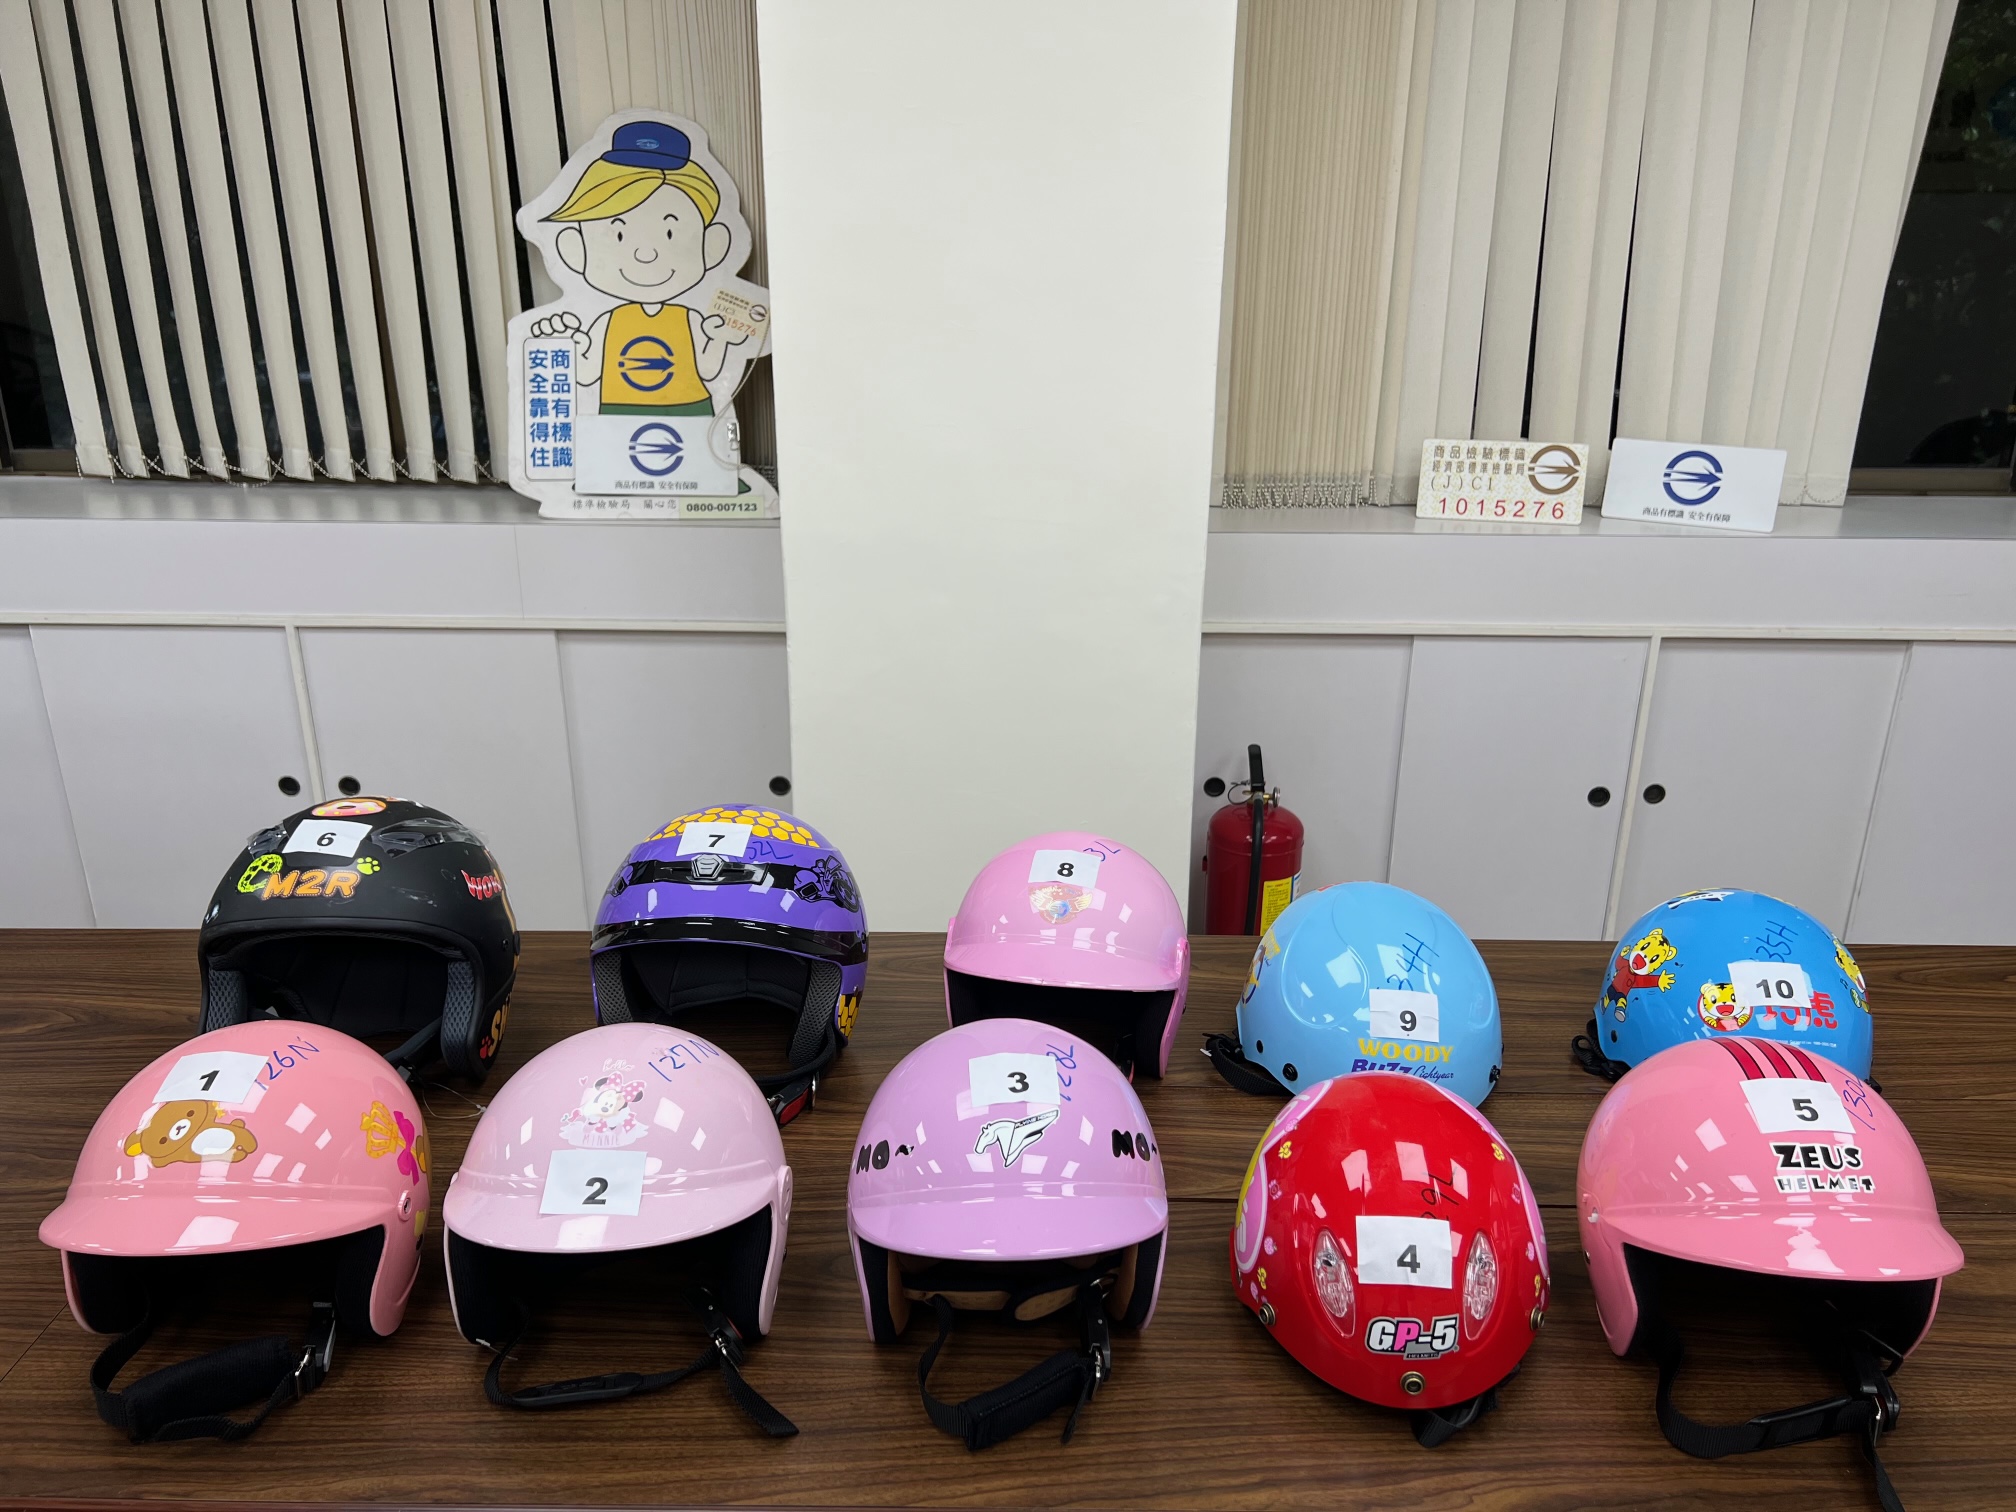 經濟部標準檢驗局與財團法人中華民國消費者文教基金會共同公布市售「機車安全帽」檢測結果